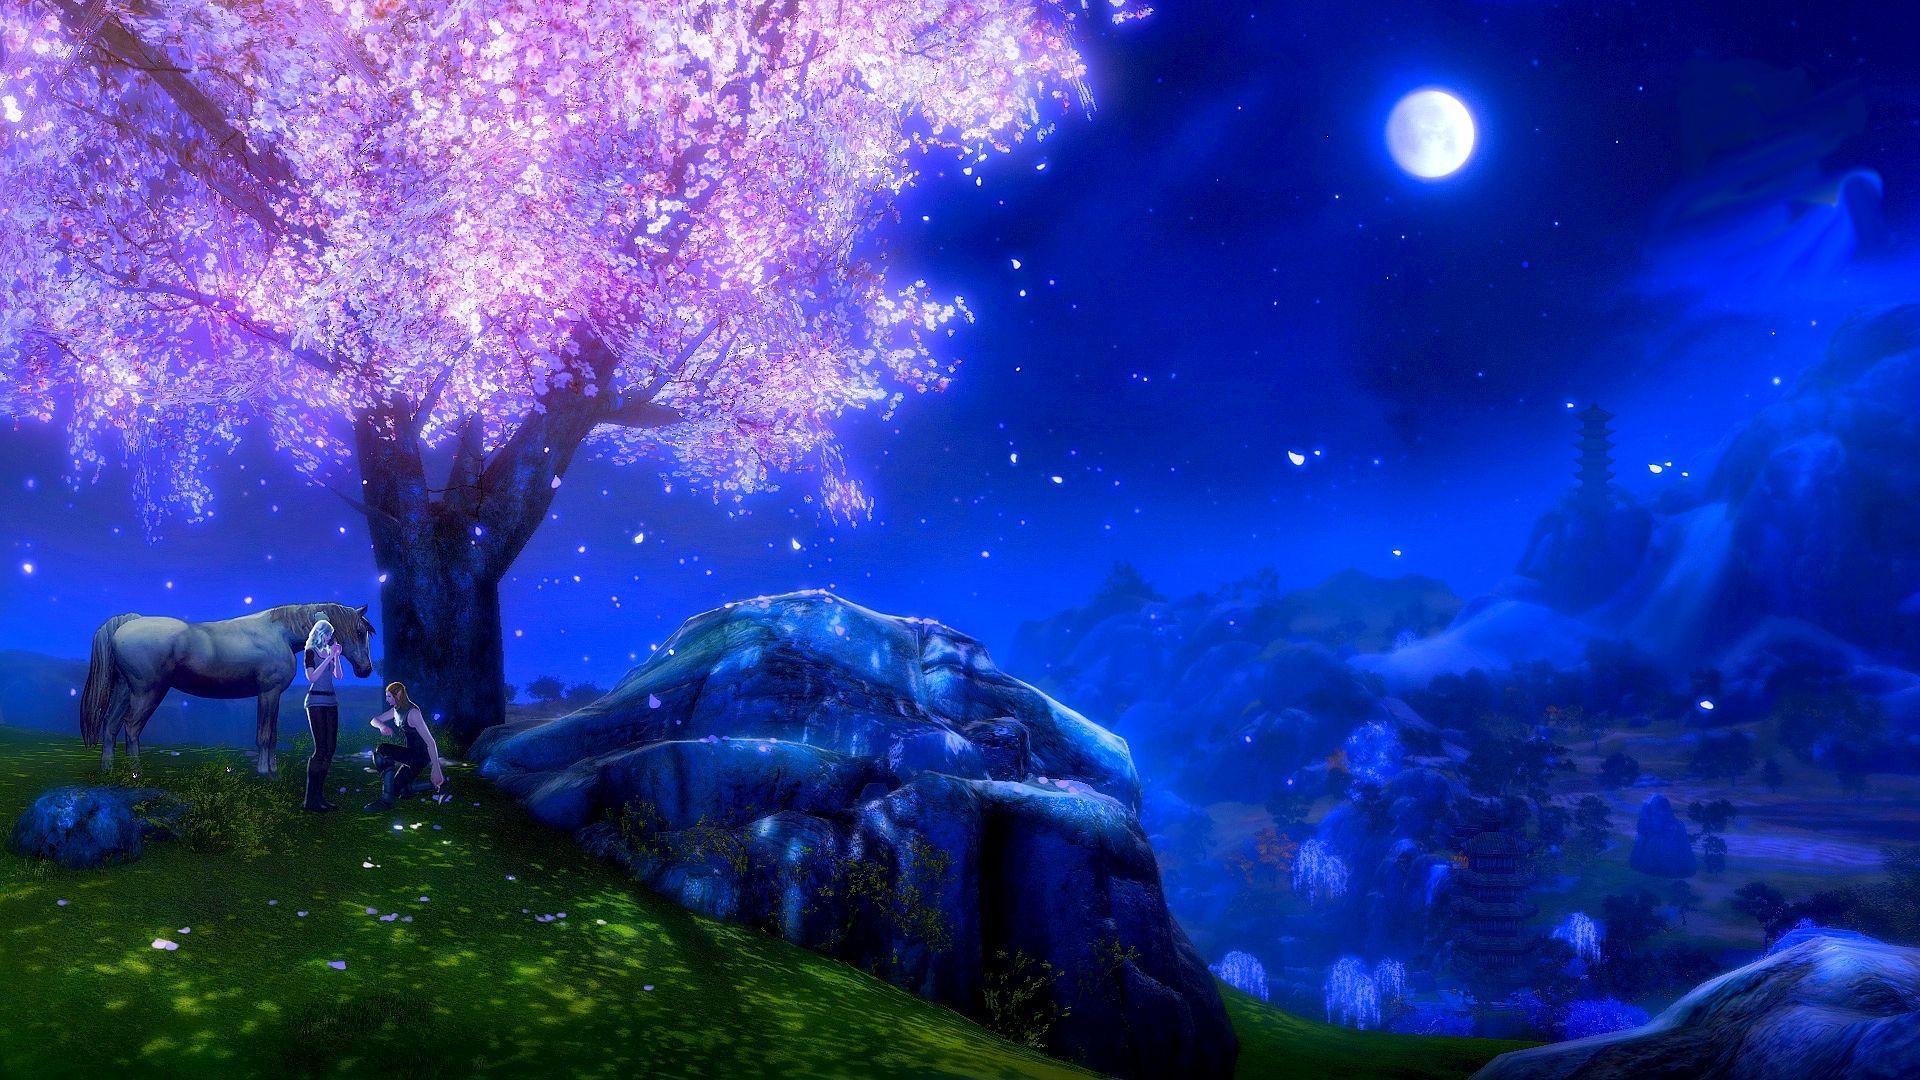 Night in Fantasy Village Full HD Wallpaper